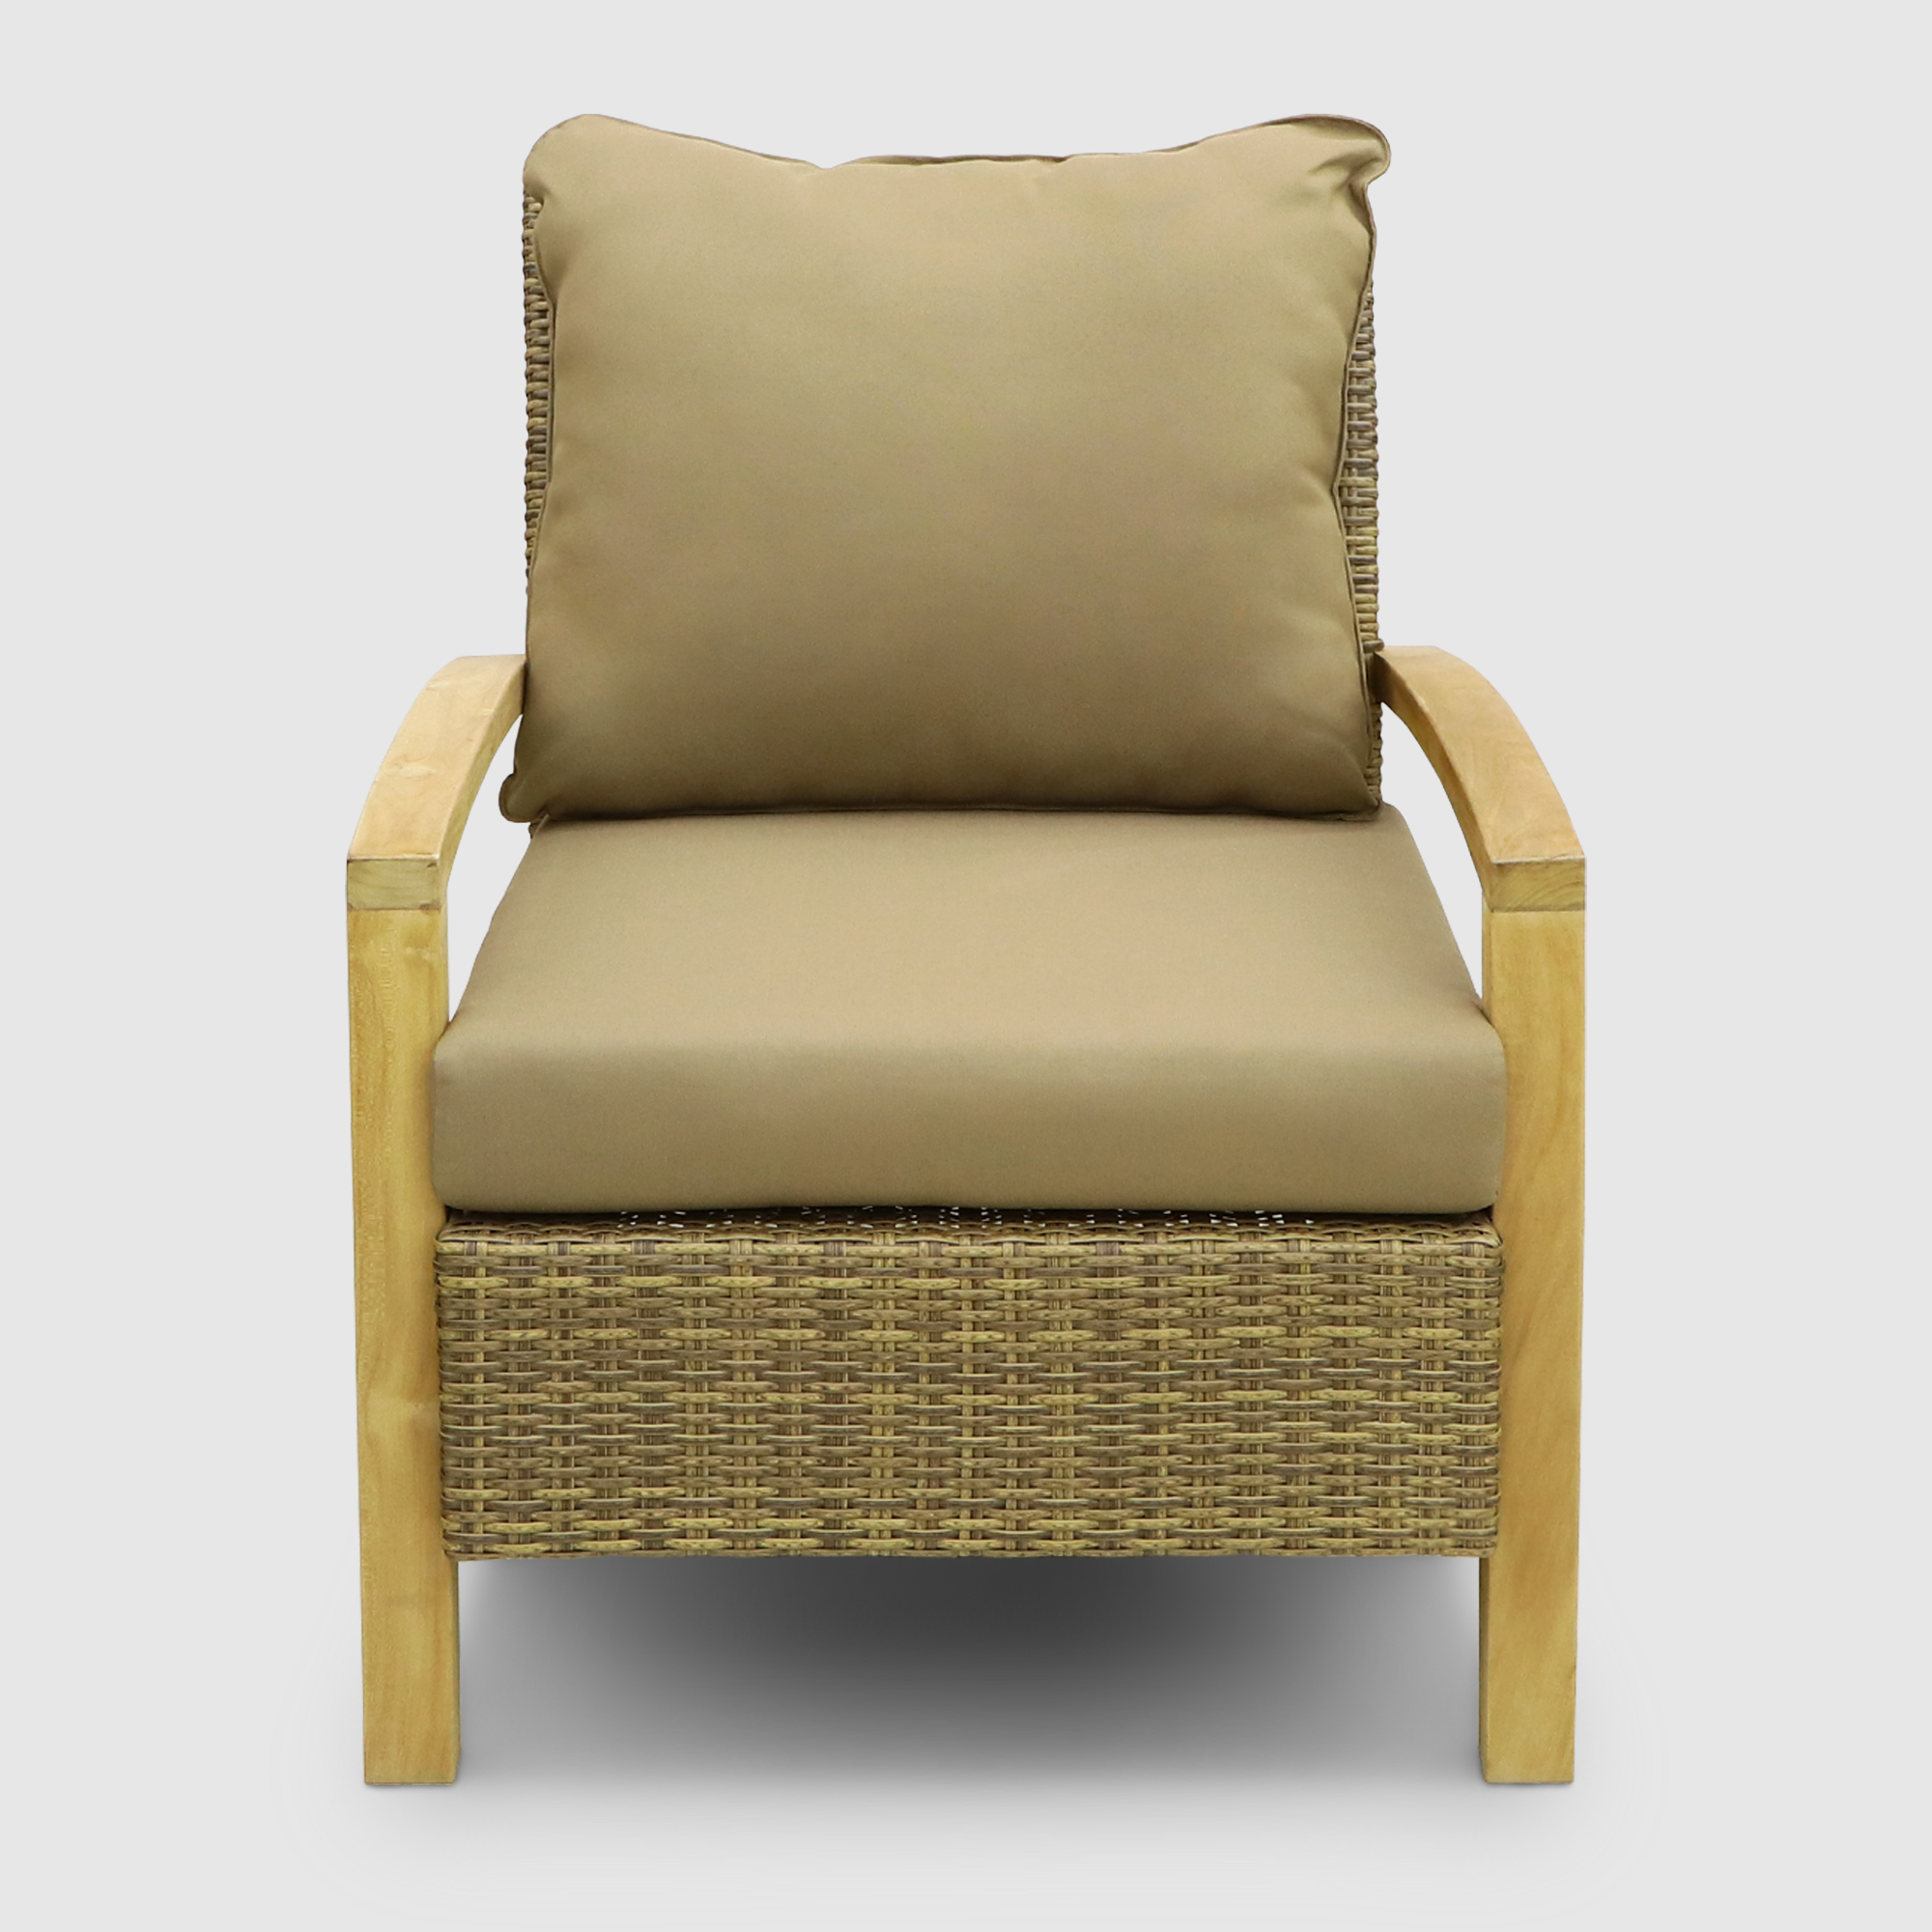 Комплект мебели Jepara Bastian 5 предметов, цвет светло-коричневый, размер 240х88х125 - фото 5